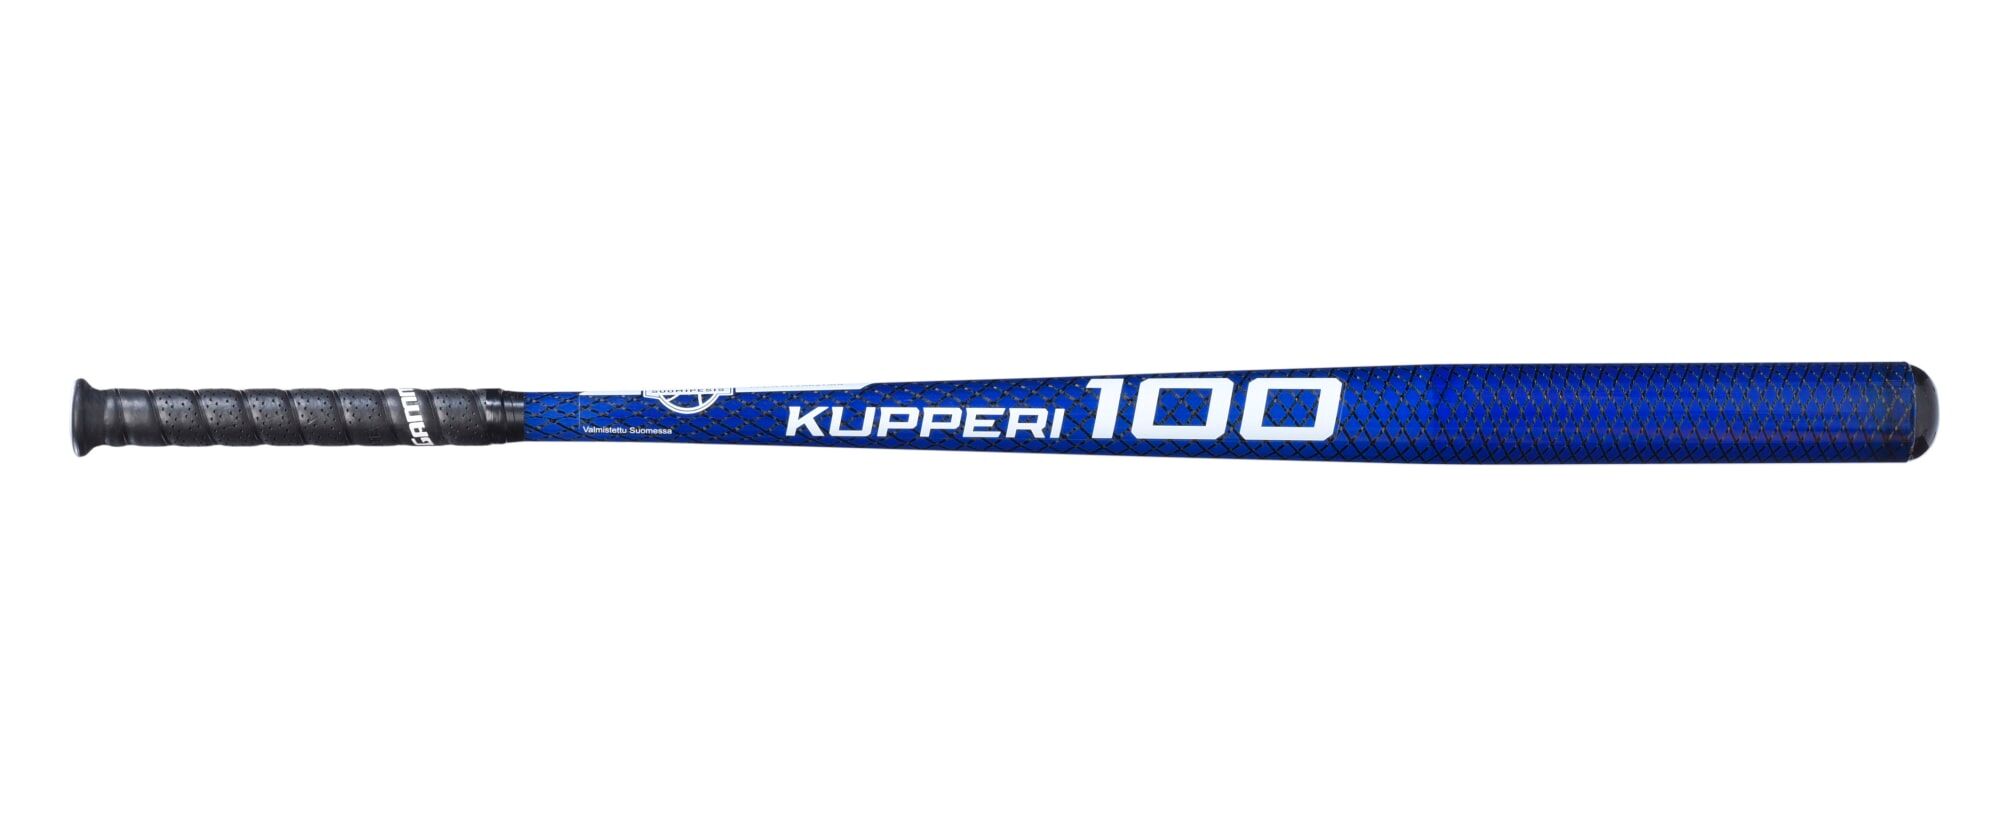 Suomipesis Kupperi 100 580g pesäpallomaila